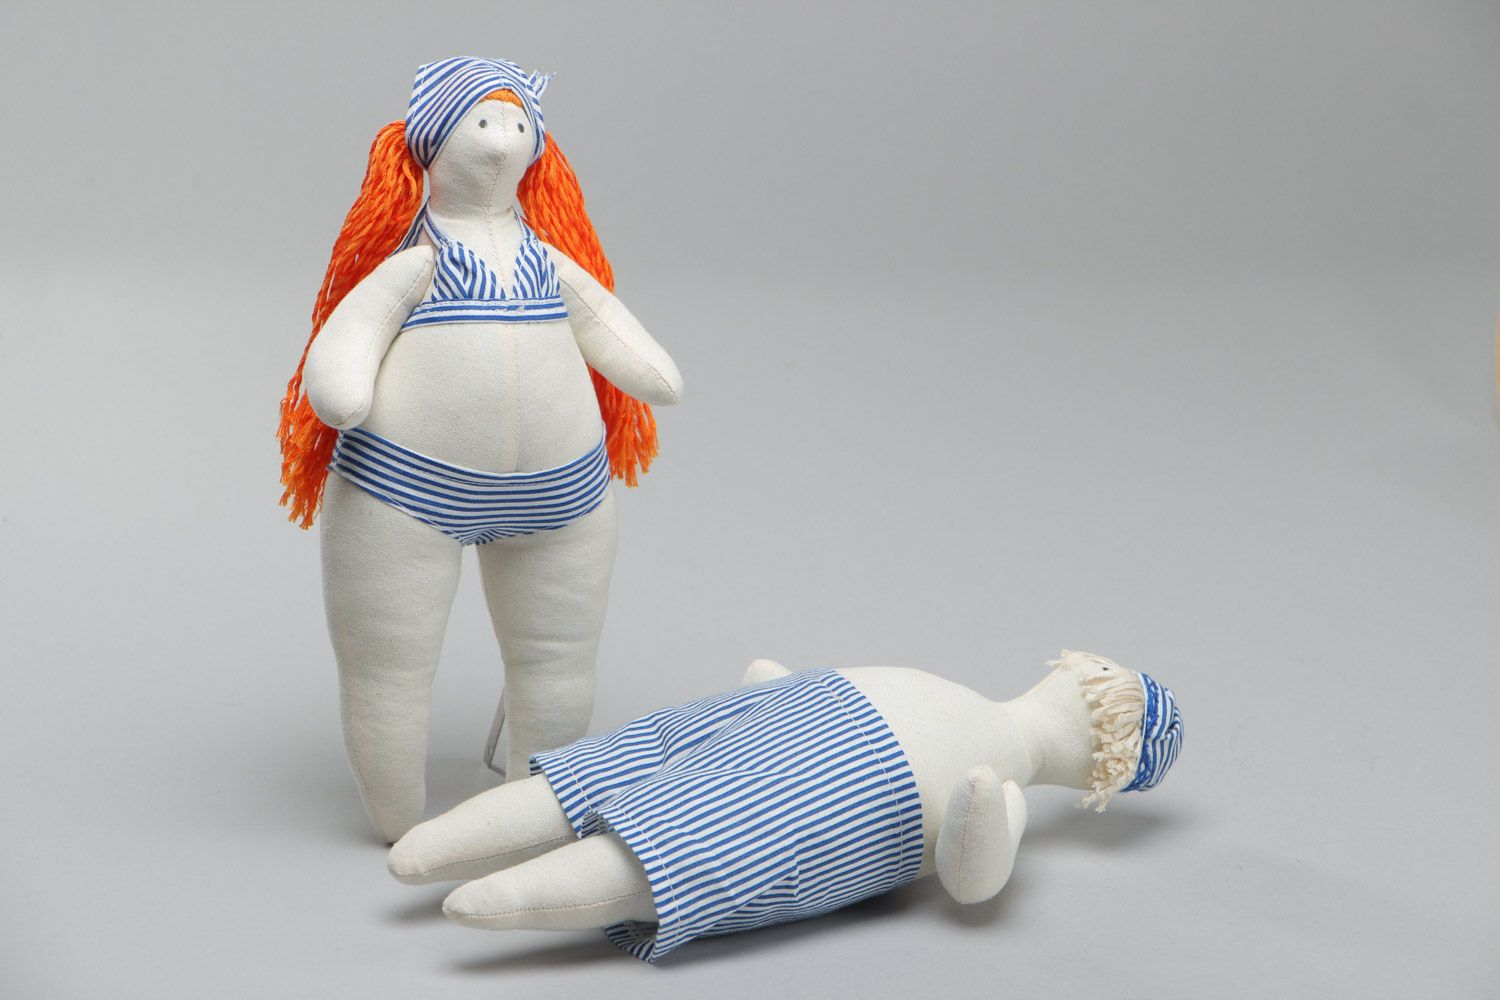 Игрушки куклы из ткани набор 2 штуки мягкие красивые ручной работы пляжники фото 3